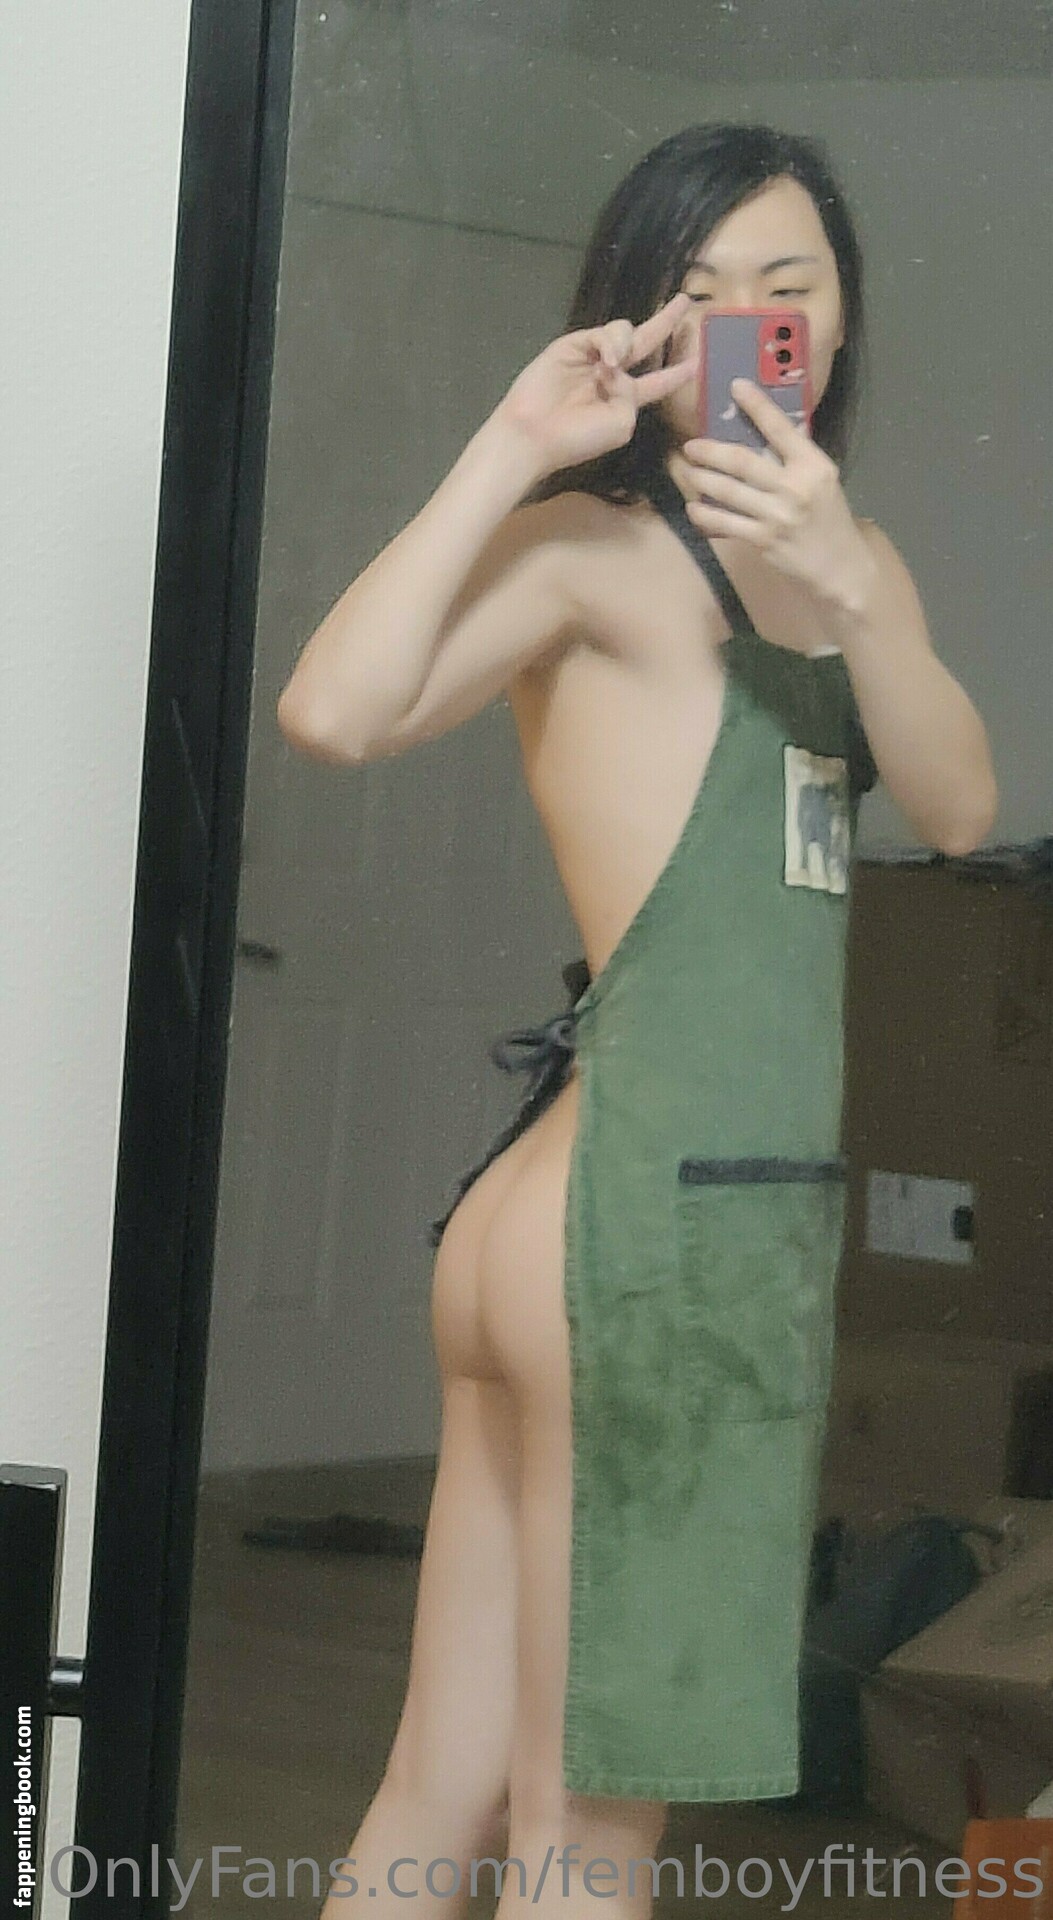 femboyfitness Nude OnlyFans Leaks